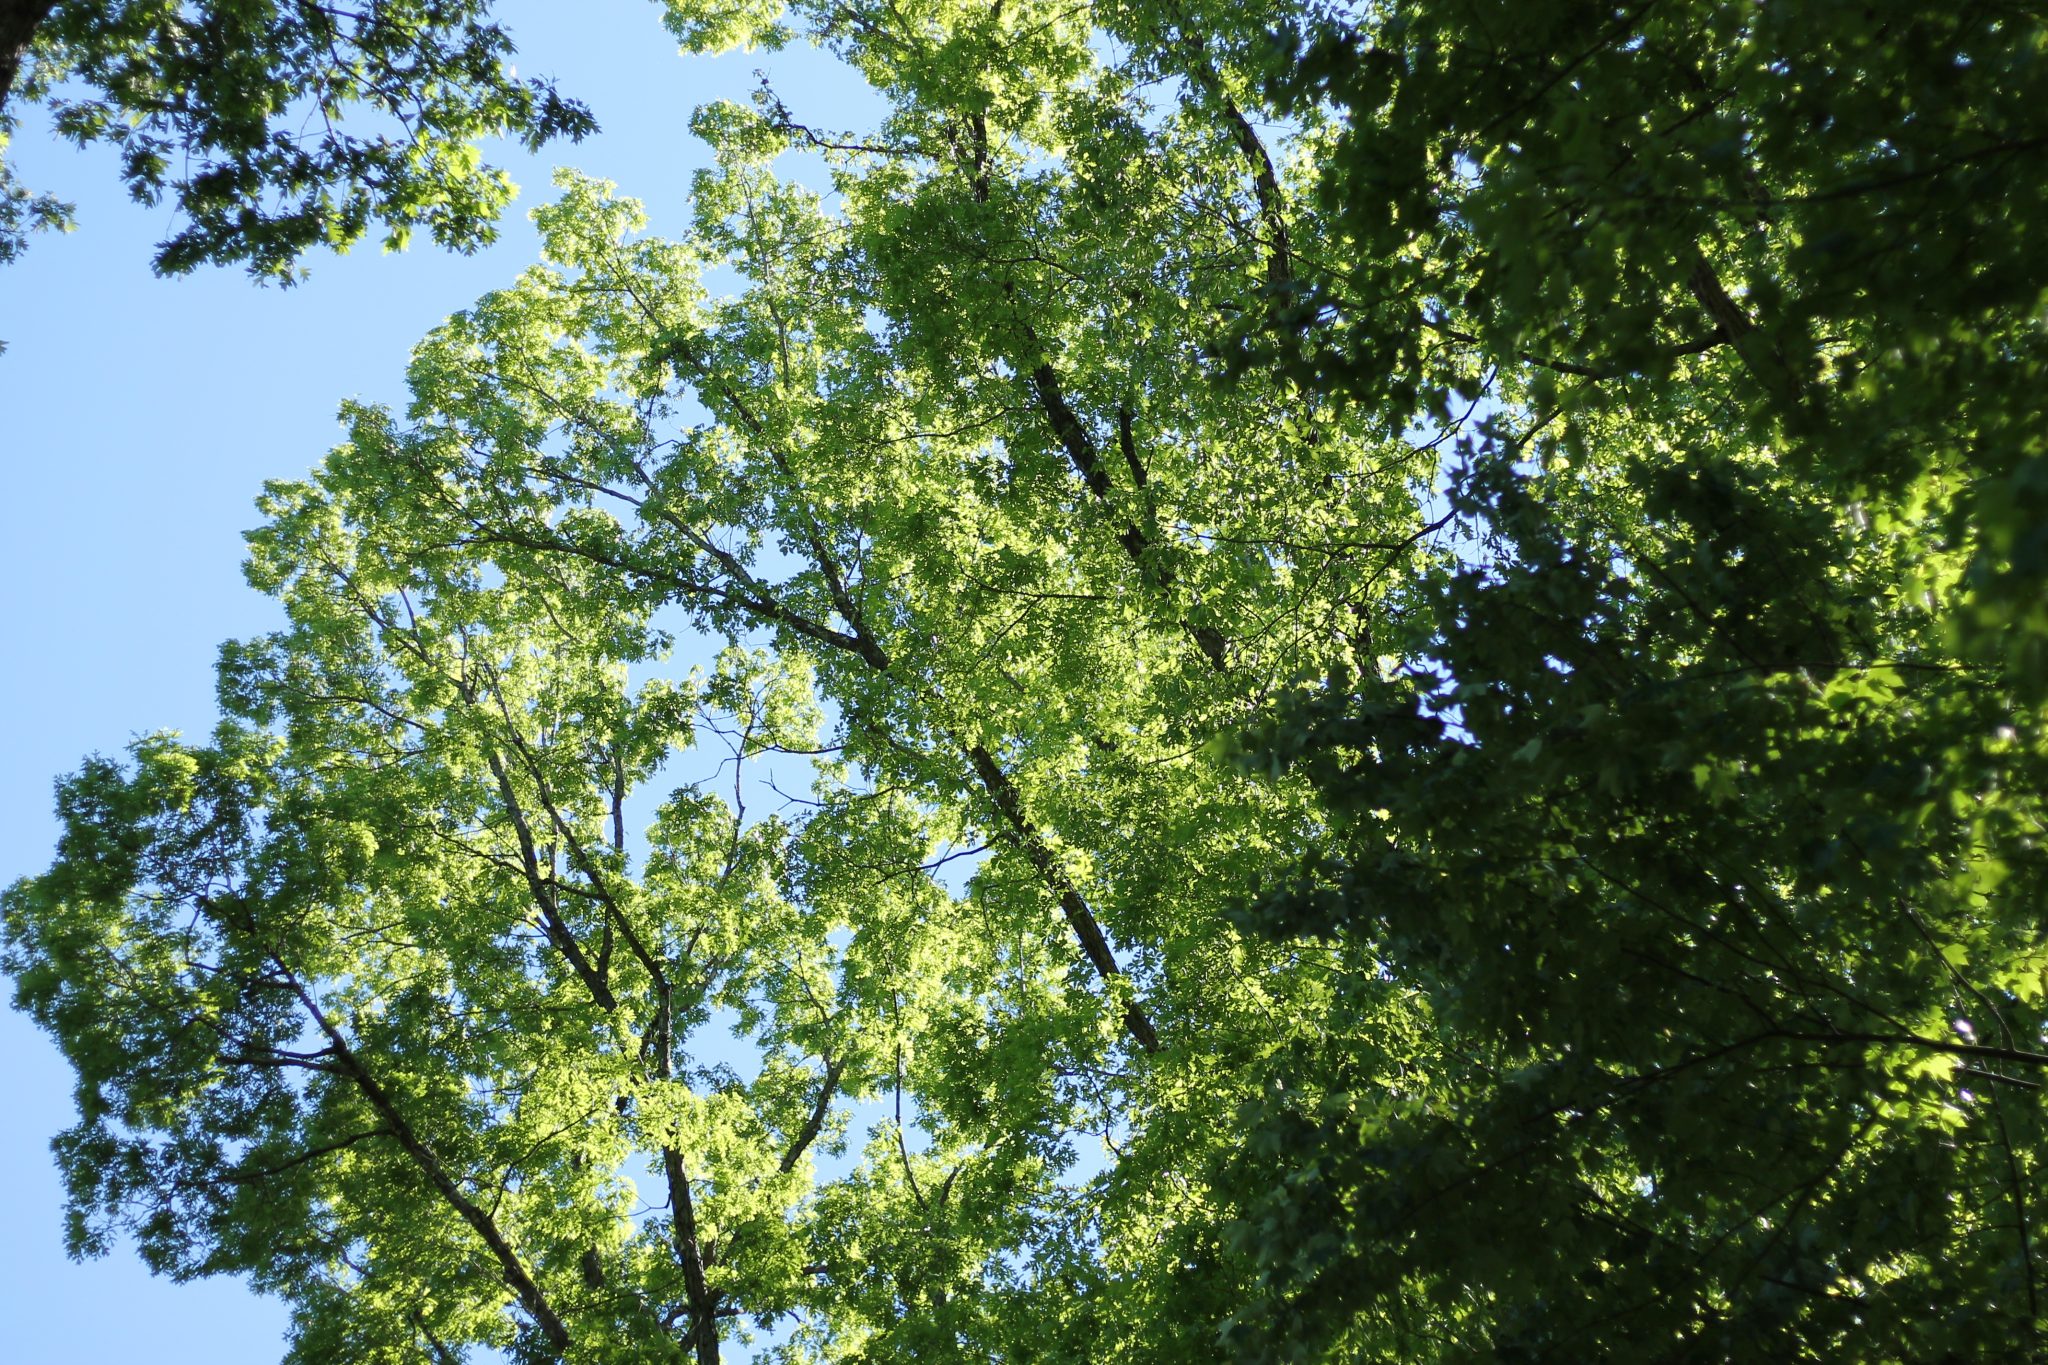 Roanoke Trees in Fern Park